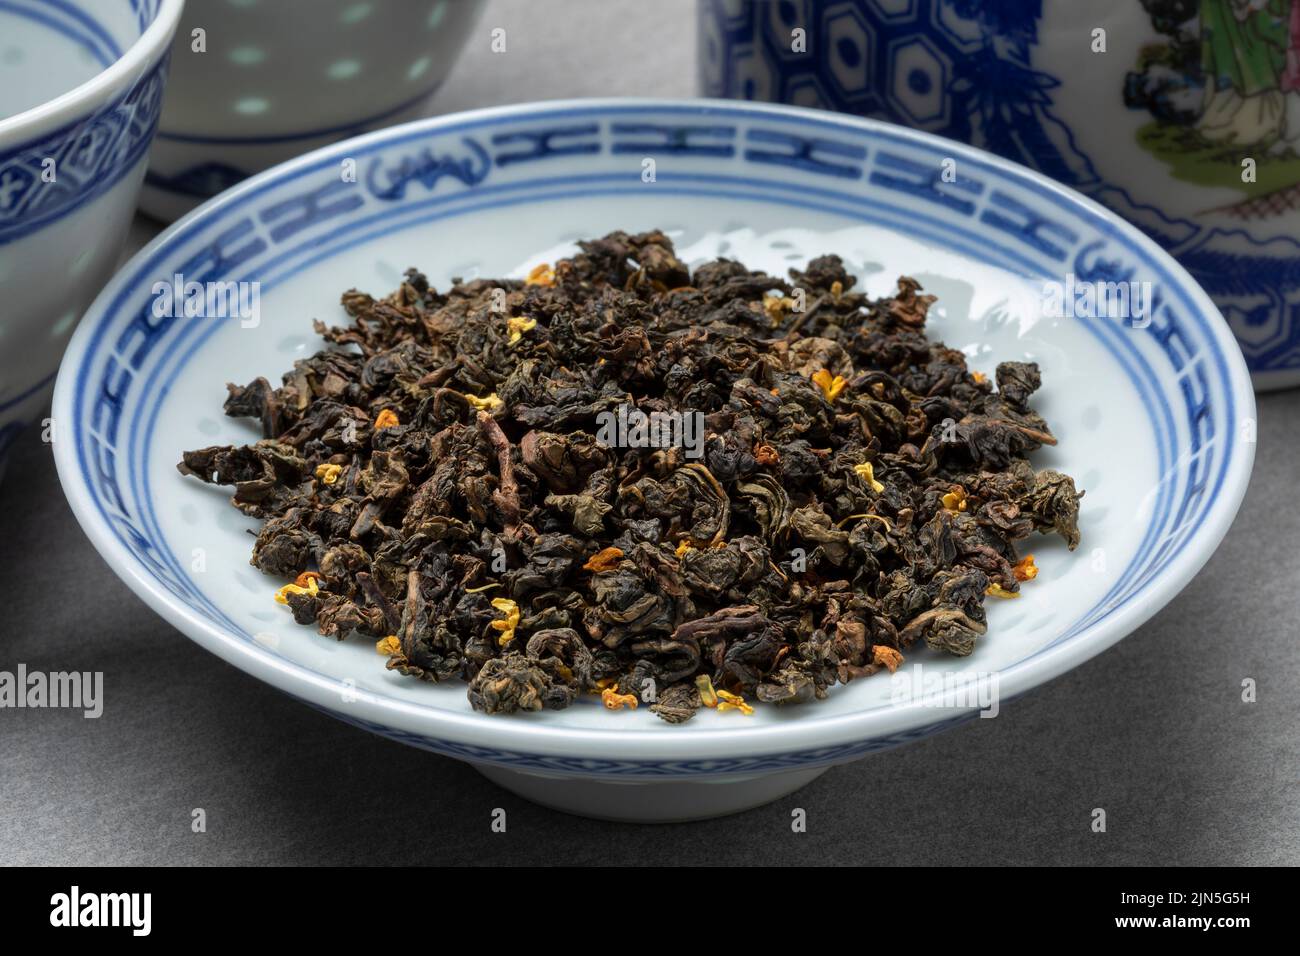 Cuenco con gui hua Osmanthus hojas de té seco de cerca Foto de stock